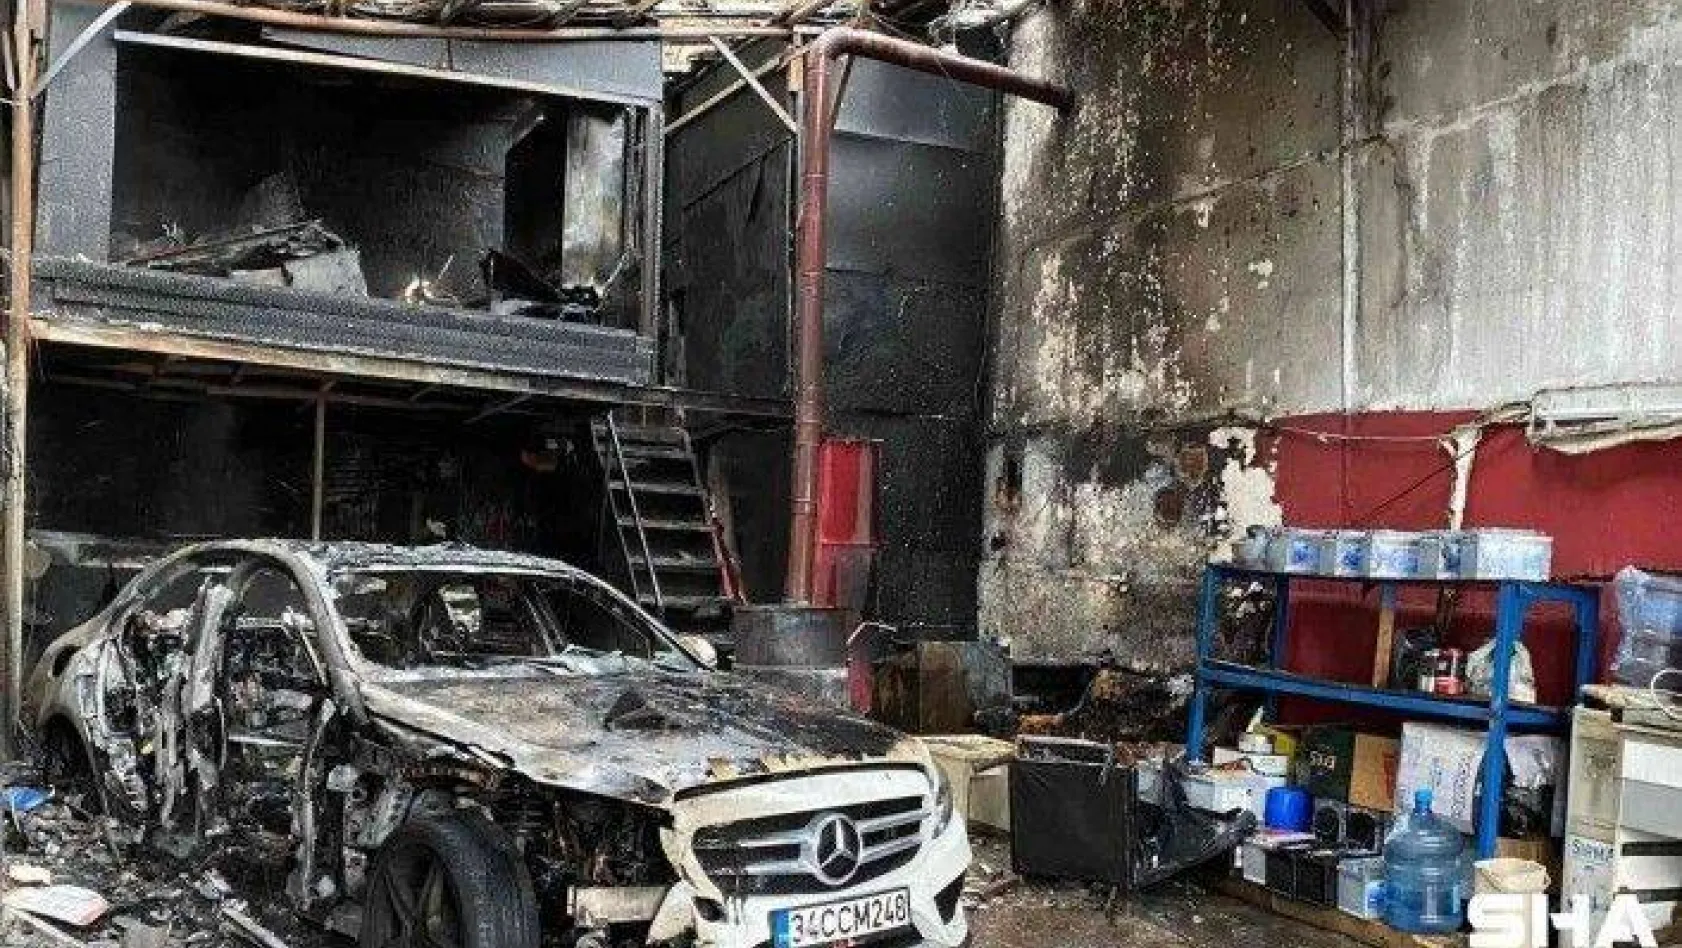 Maltepe'de araç bakım ve tamiri yapılan iş yerinde yangın